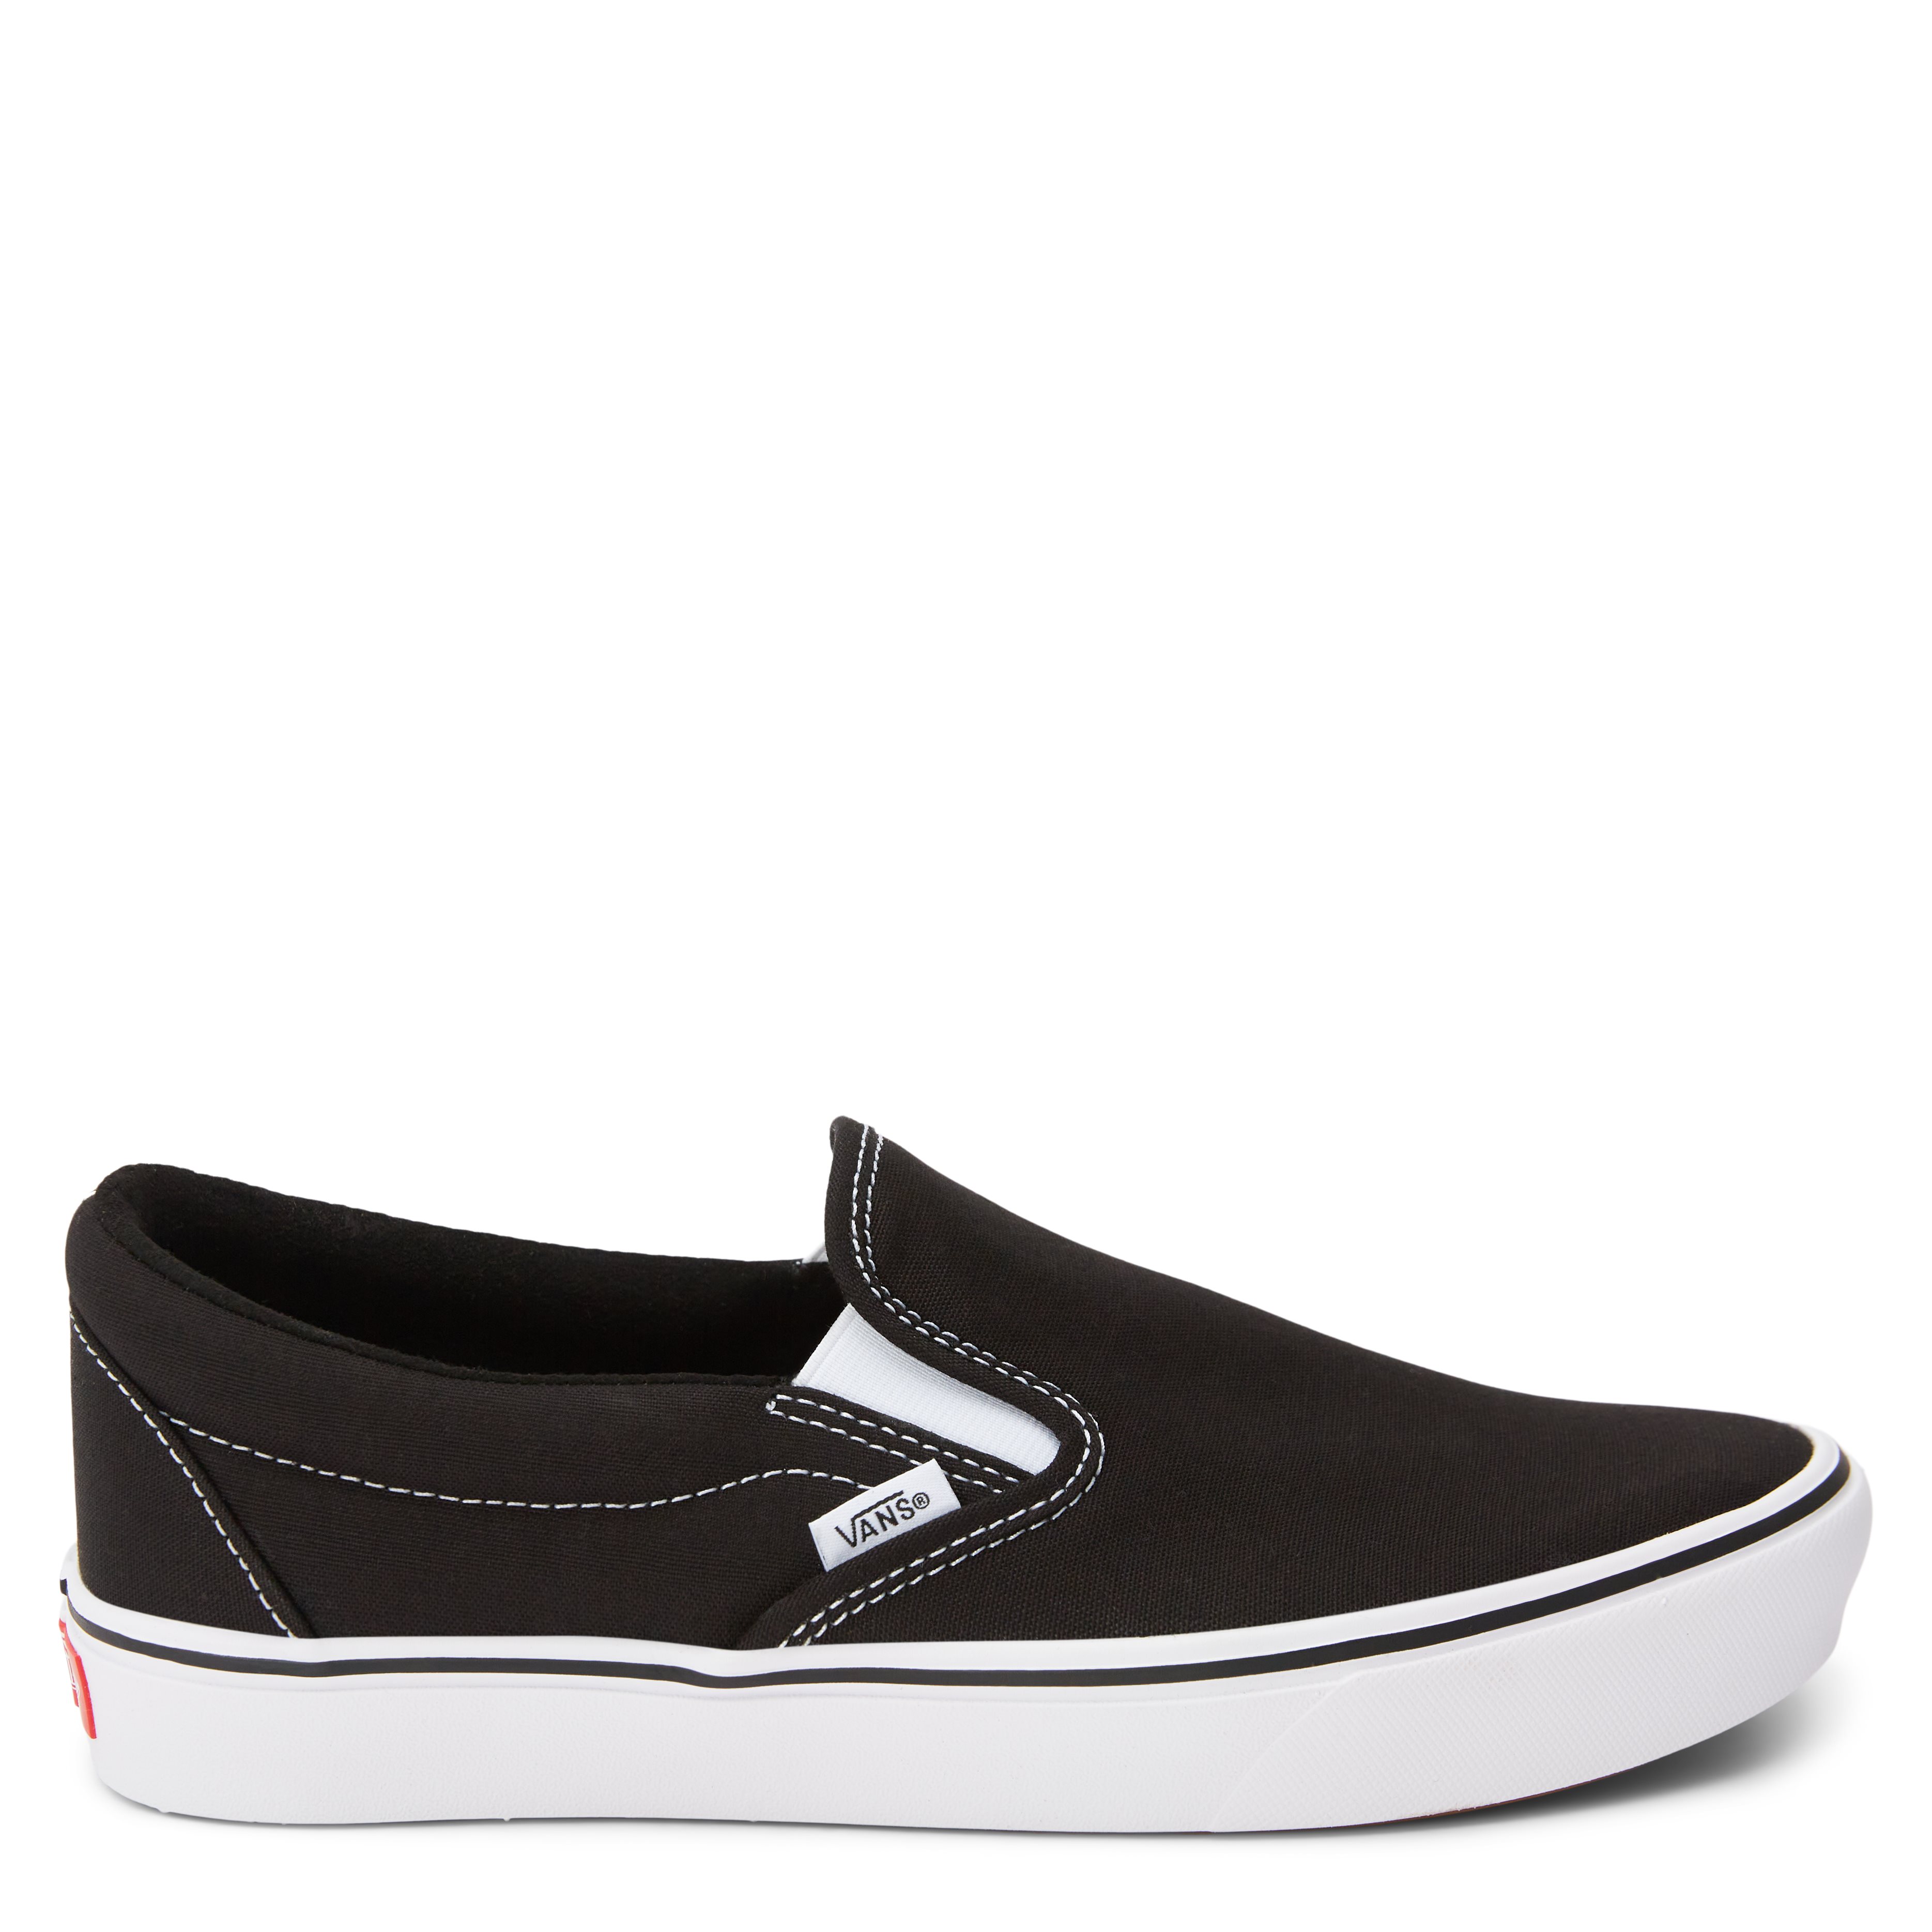 Slip On Comfy Sneaker - Shoes - Black